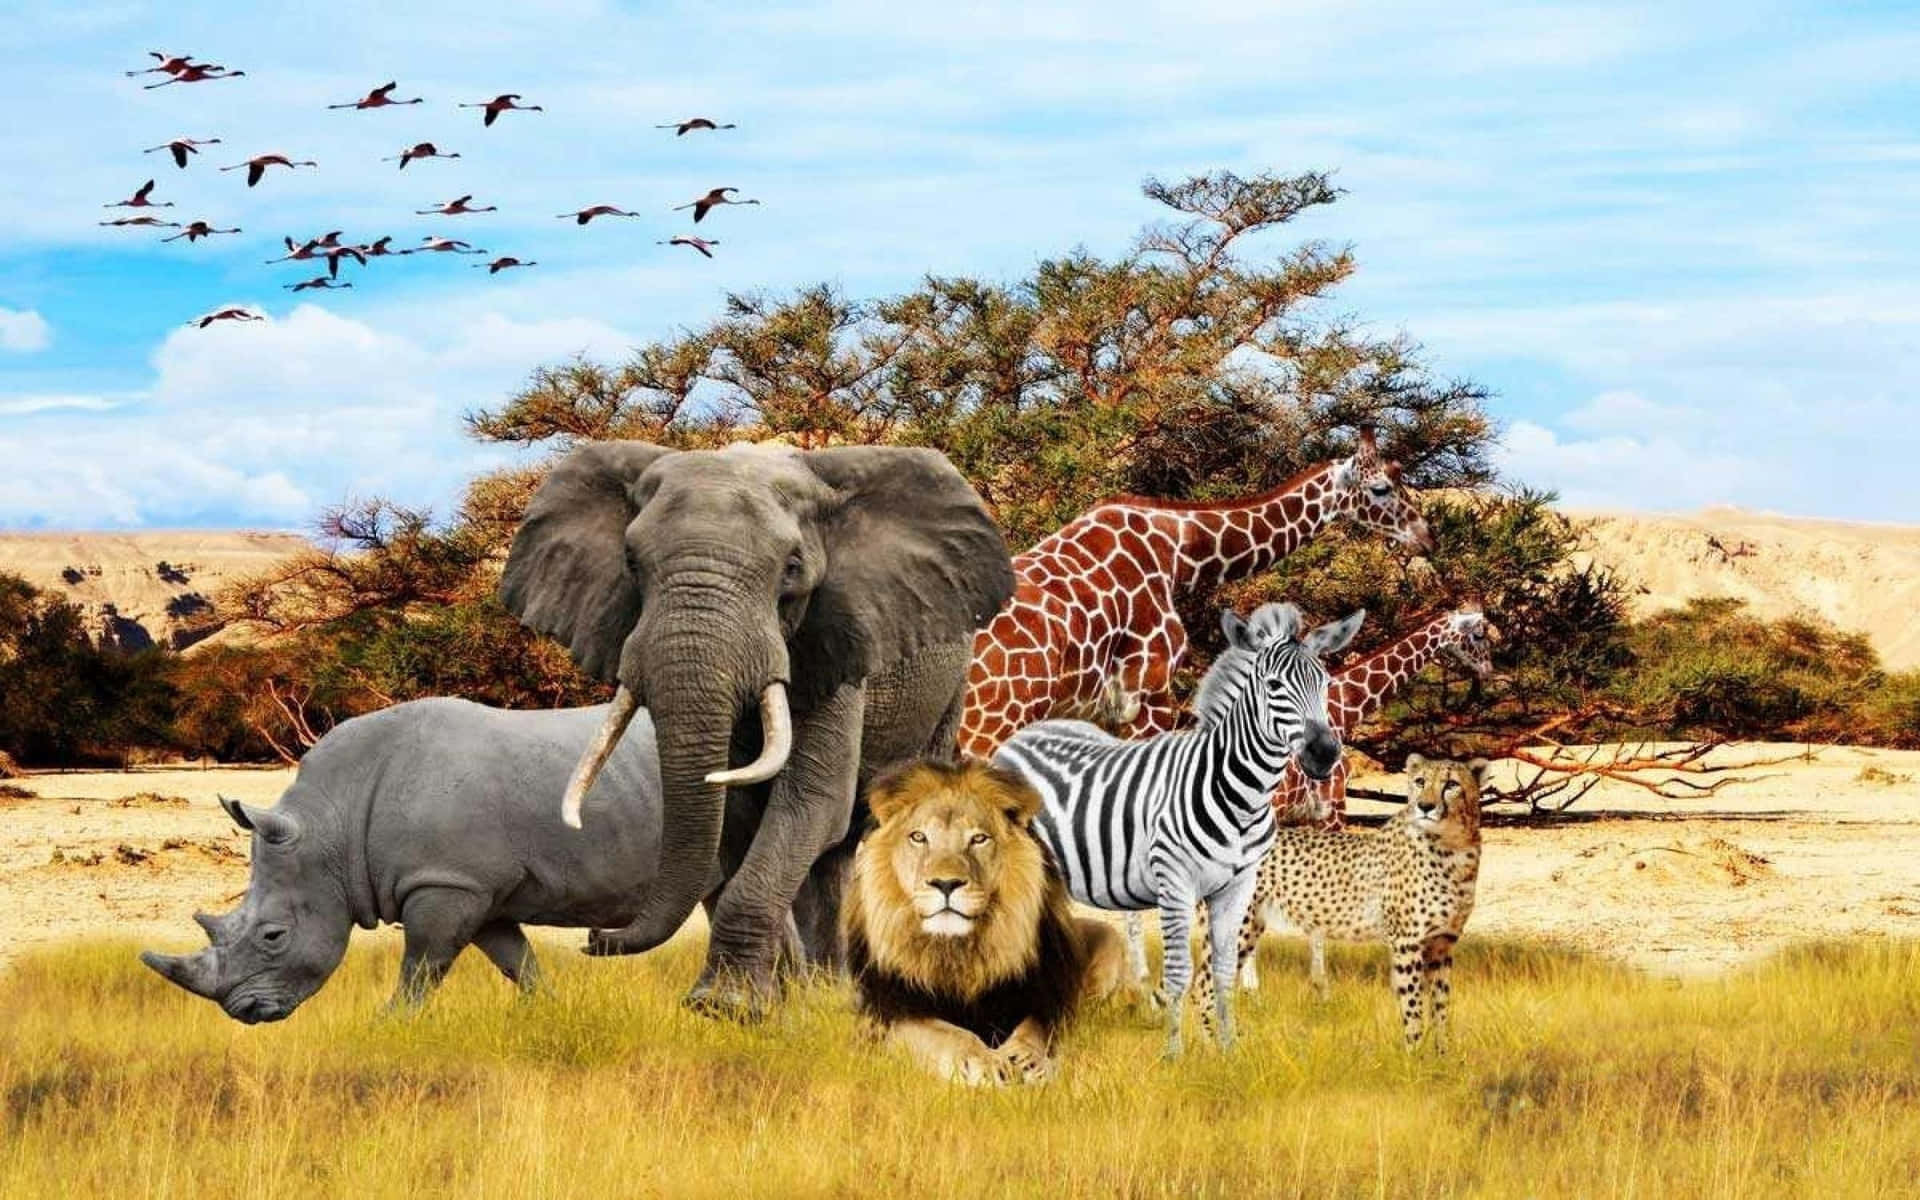 Hintergrundmit Afrikanischen Tieren